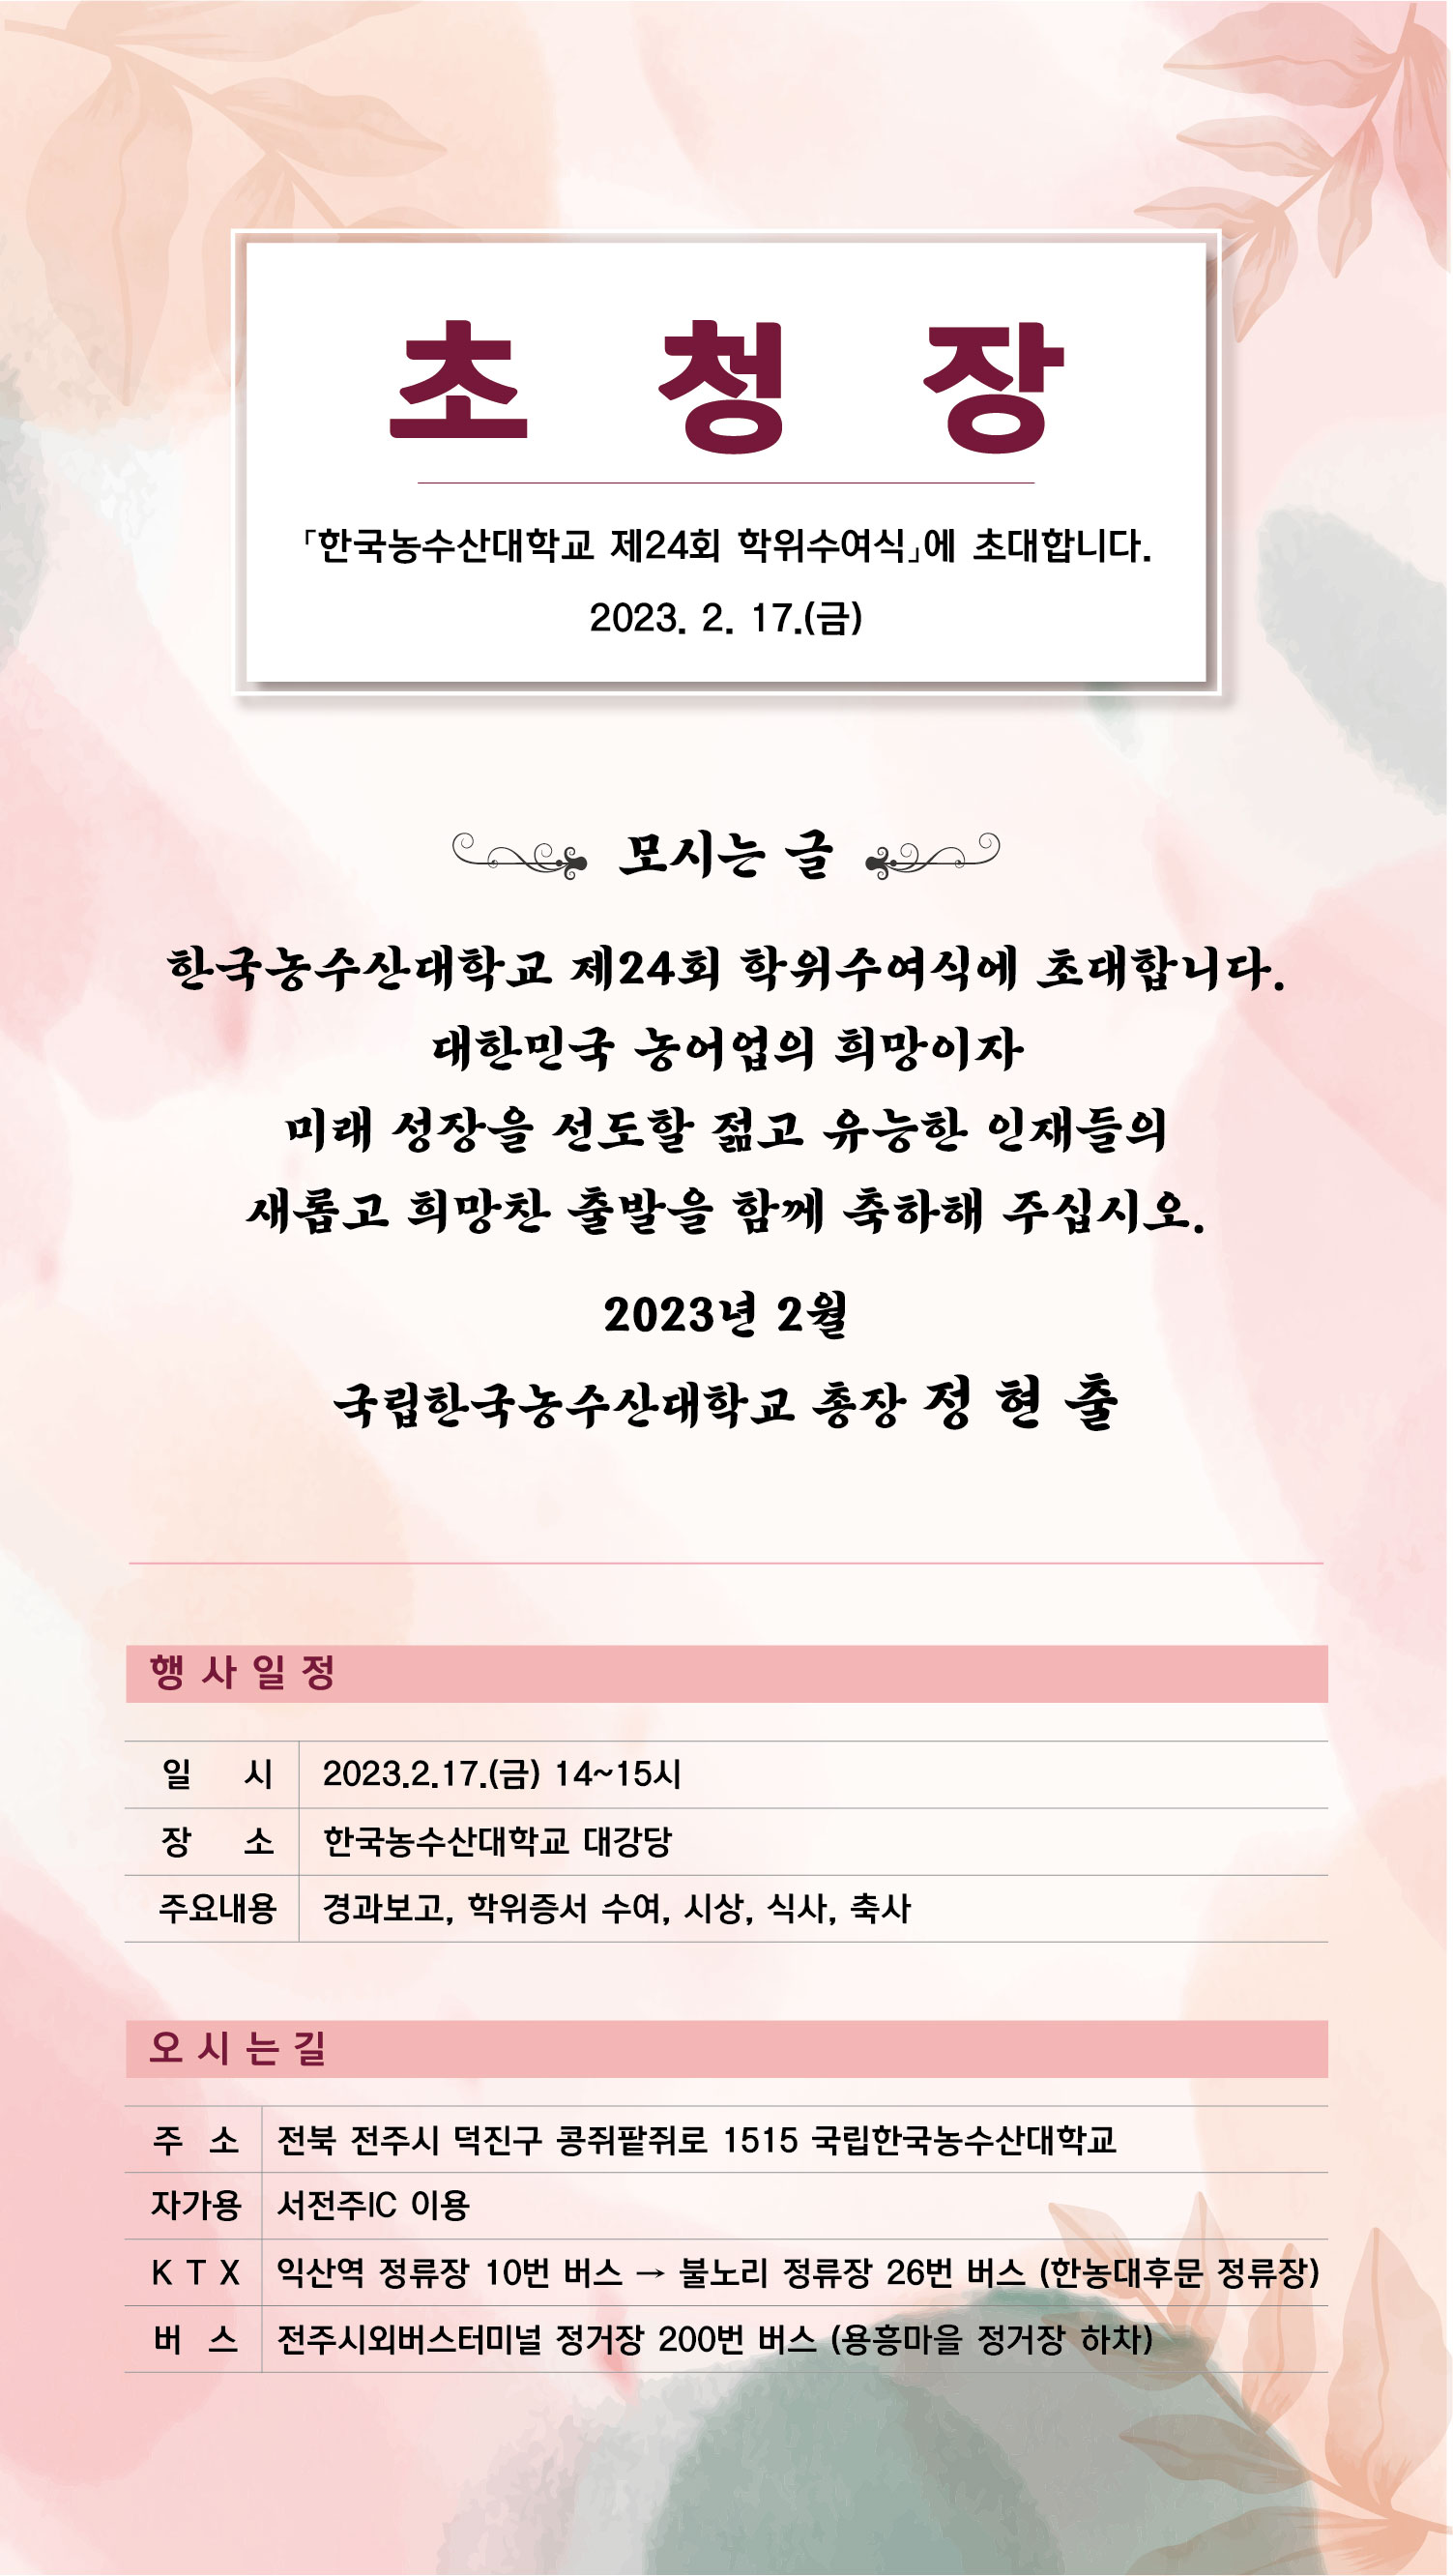 제24회 한국농수산대학교 학위수여식 모바일 초청장